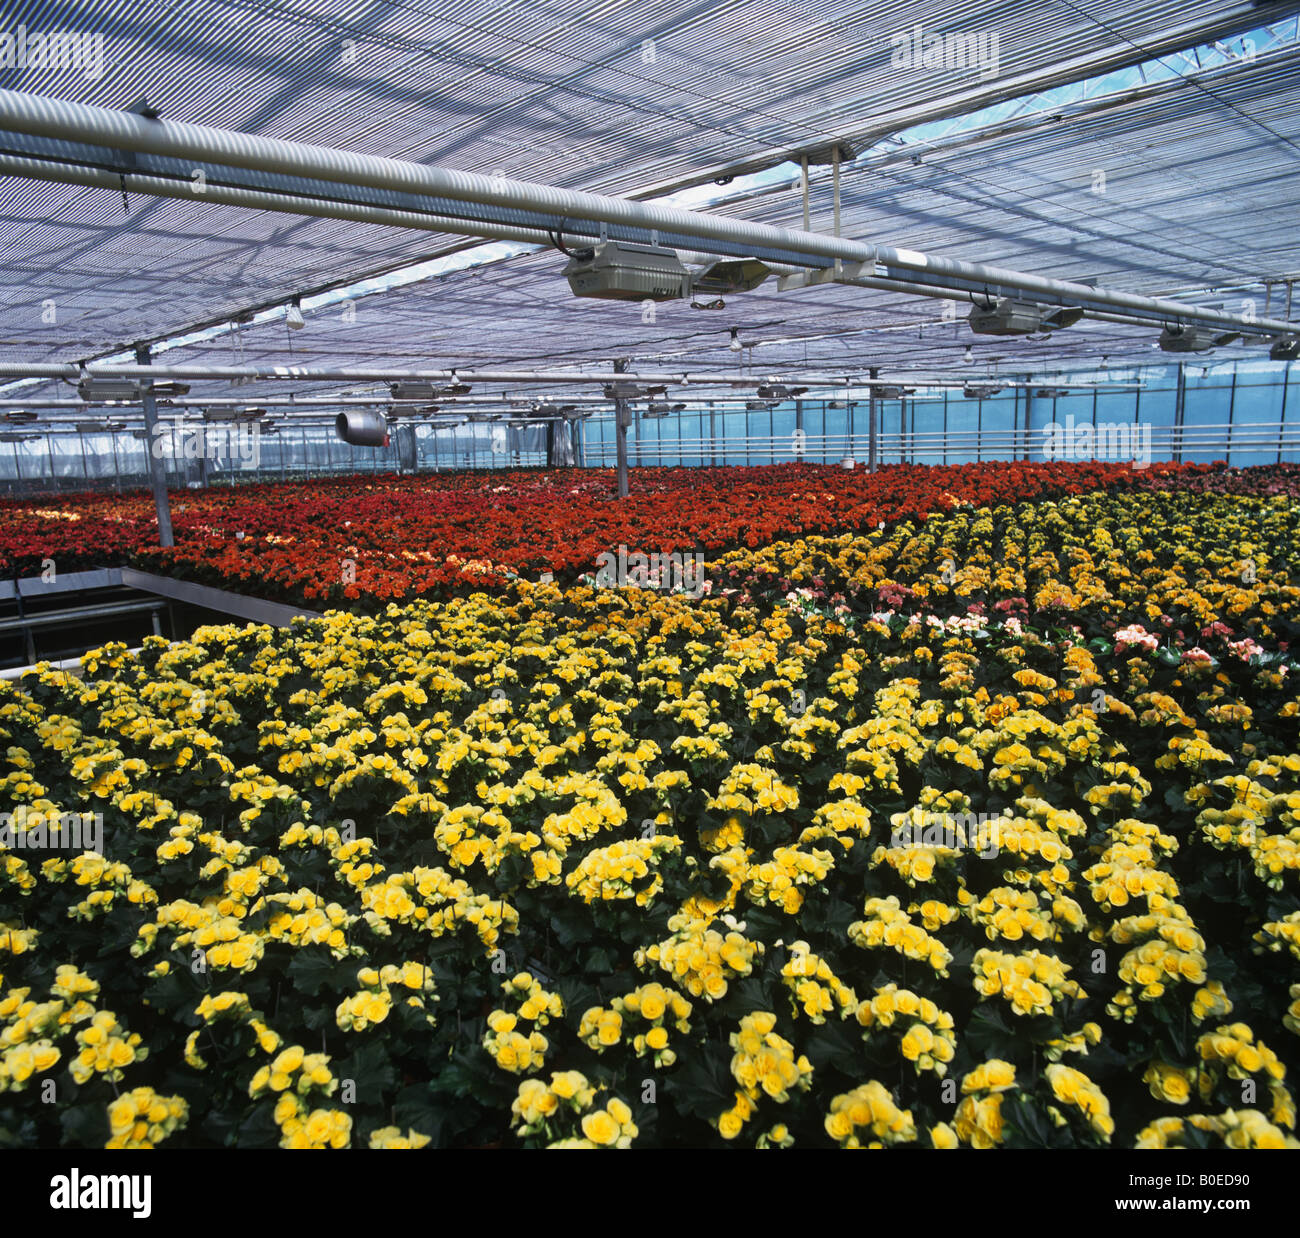 Busy Lizzie Pflanzen für Verkauf in den Geschäften in einem großen Gärtnerei Gewächshaus Aufzucht Stockfoto